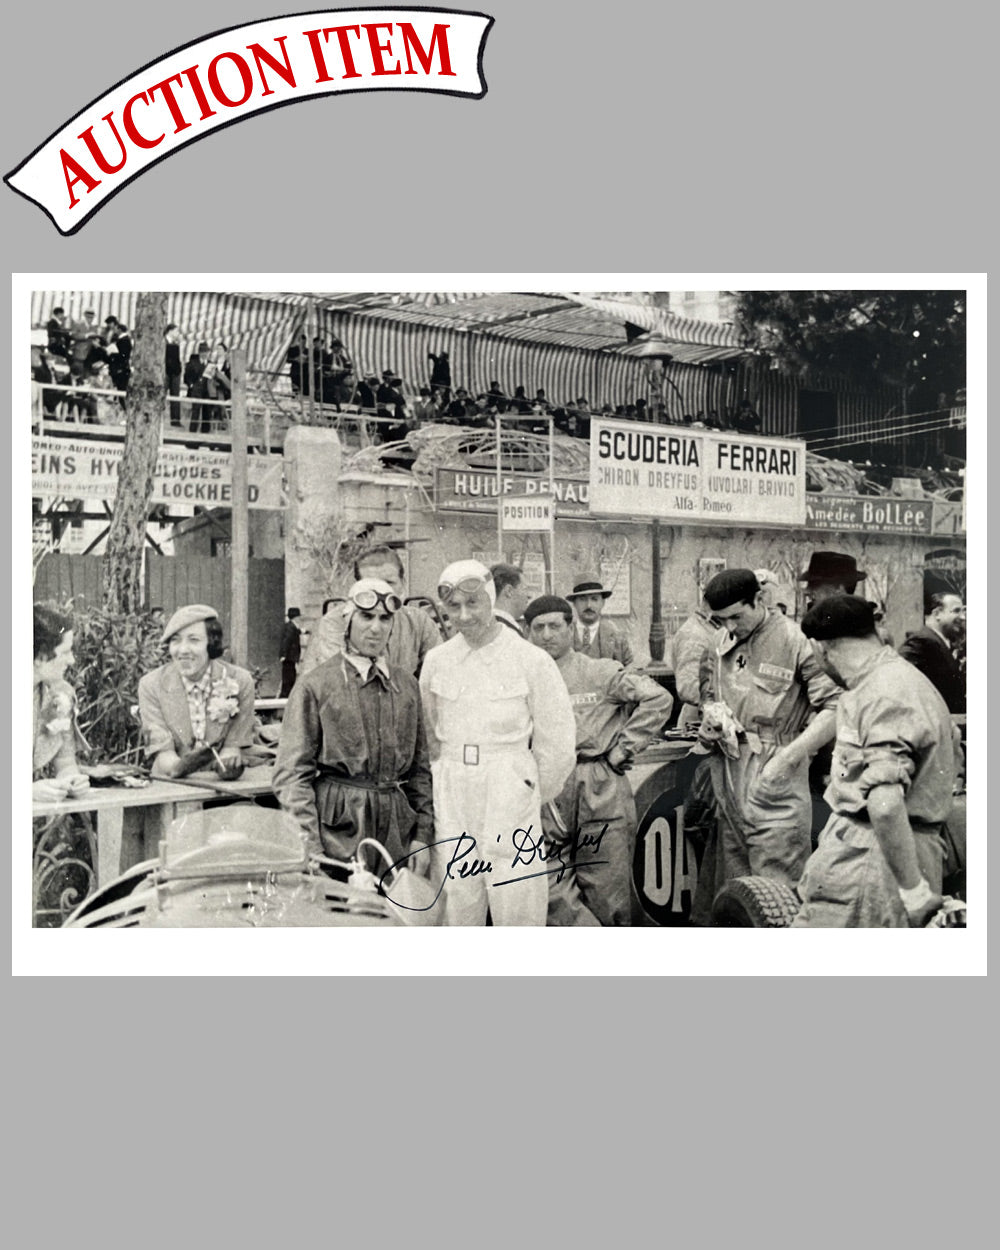 Grand Prix of Monaco 1935 b&w photograph, autographed by Dreyfus